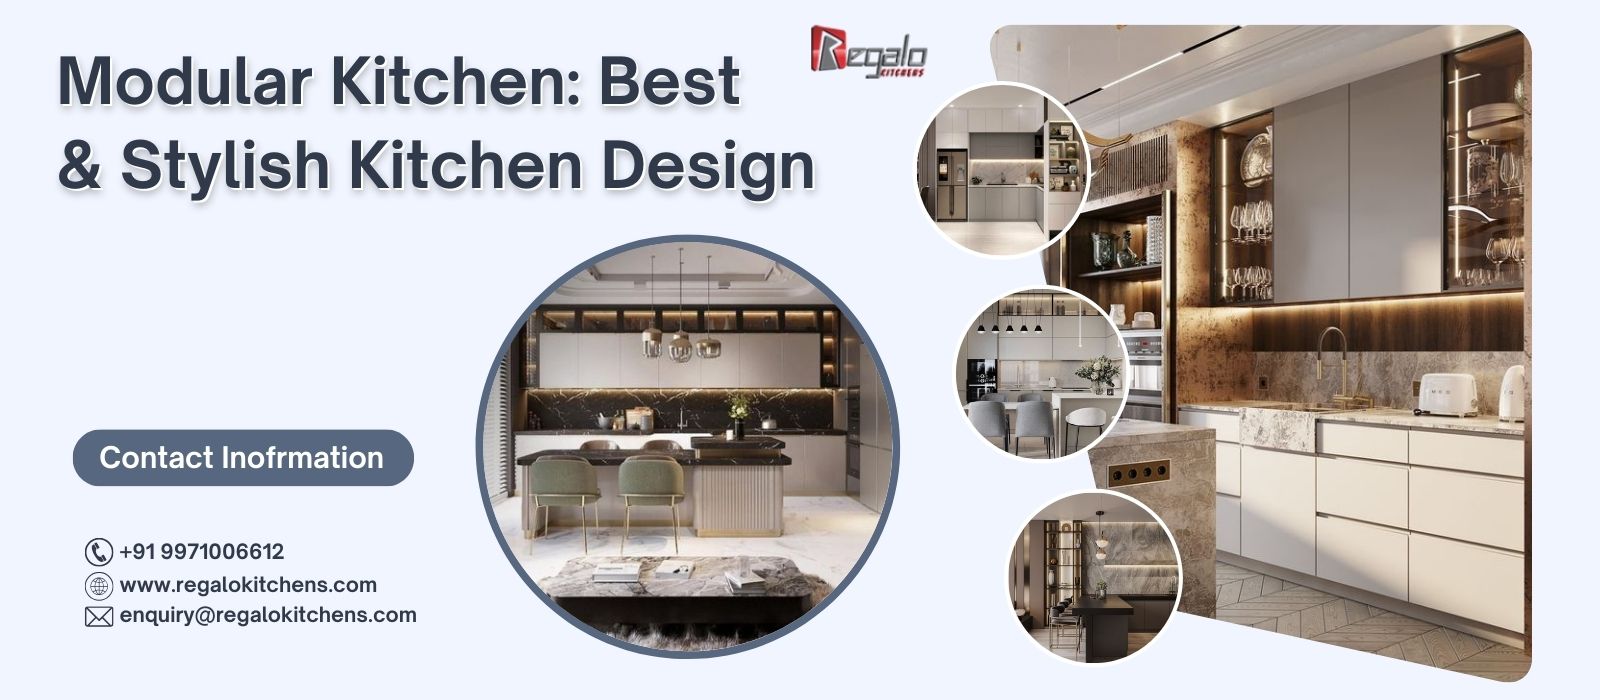 Modular Kitchen: Best & Stylish Kitchen Design